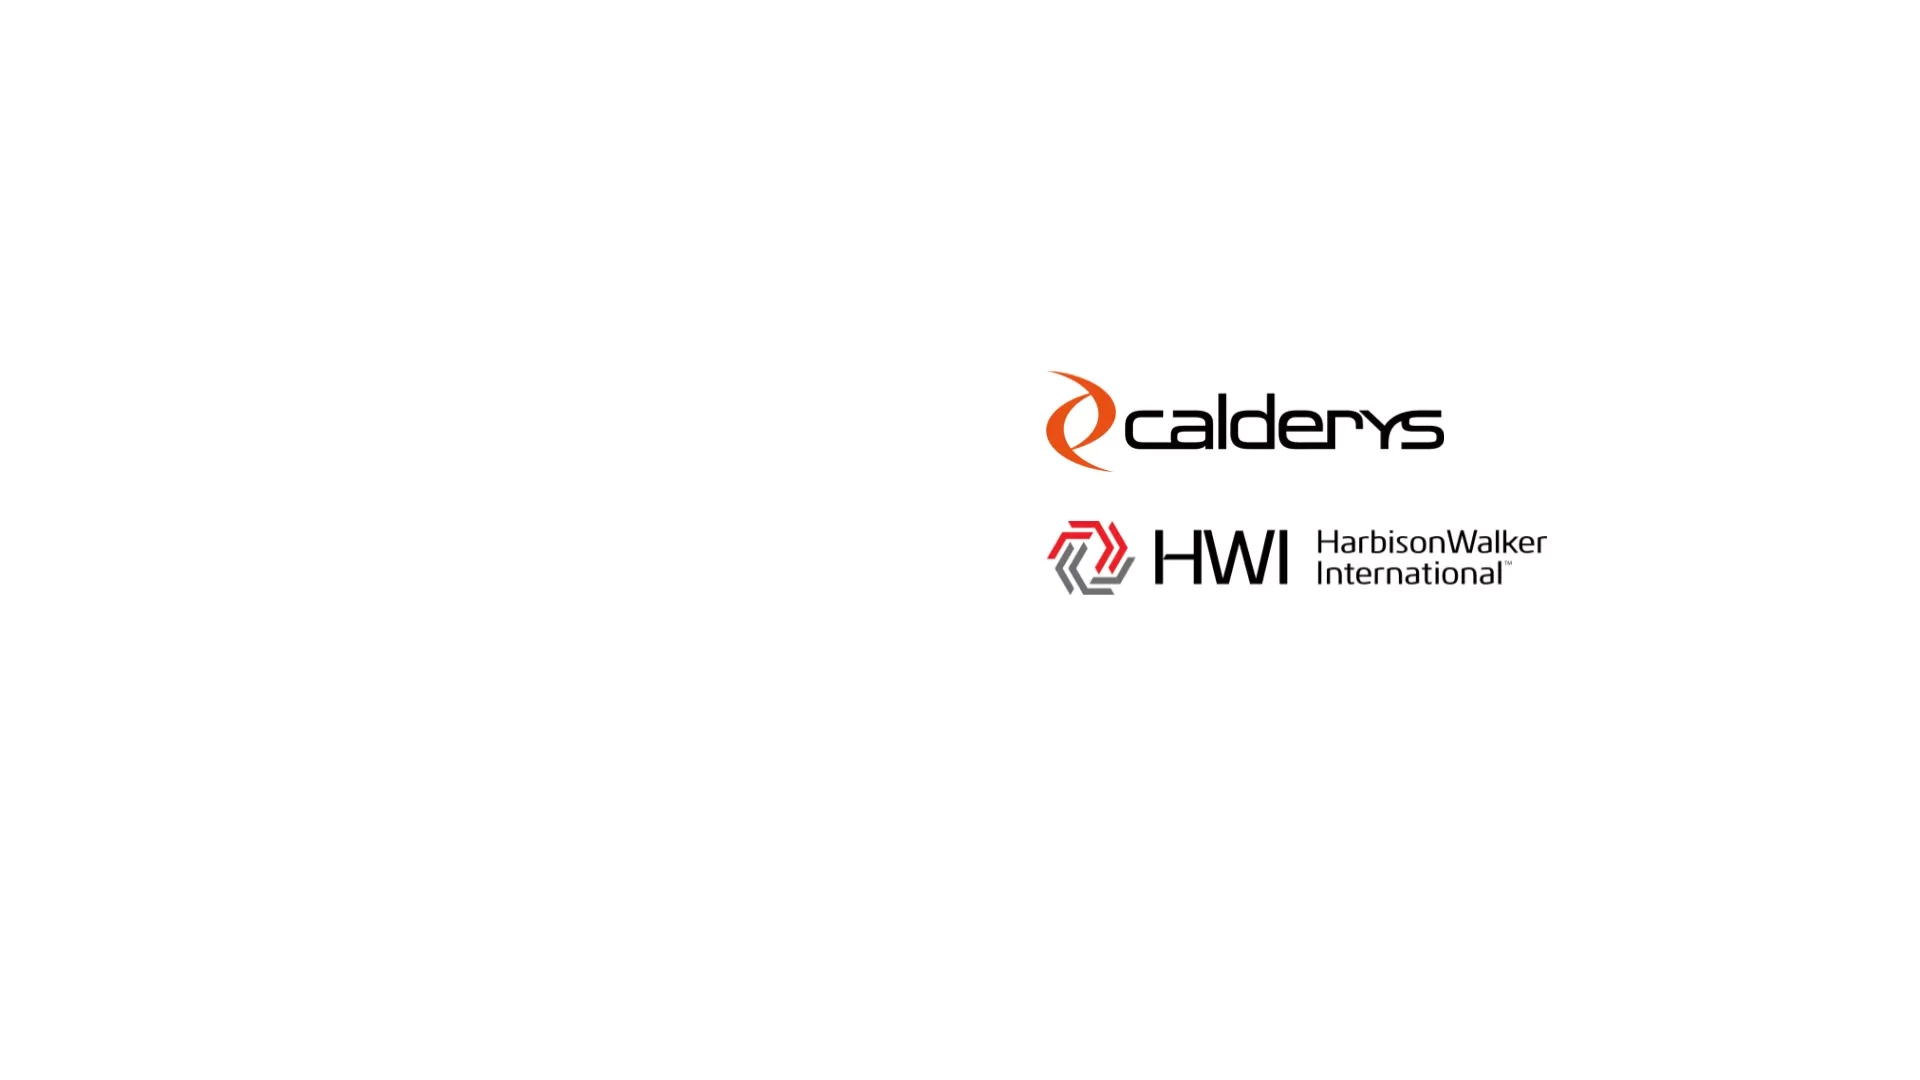 Calderys to combine with HarbisonWalker International